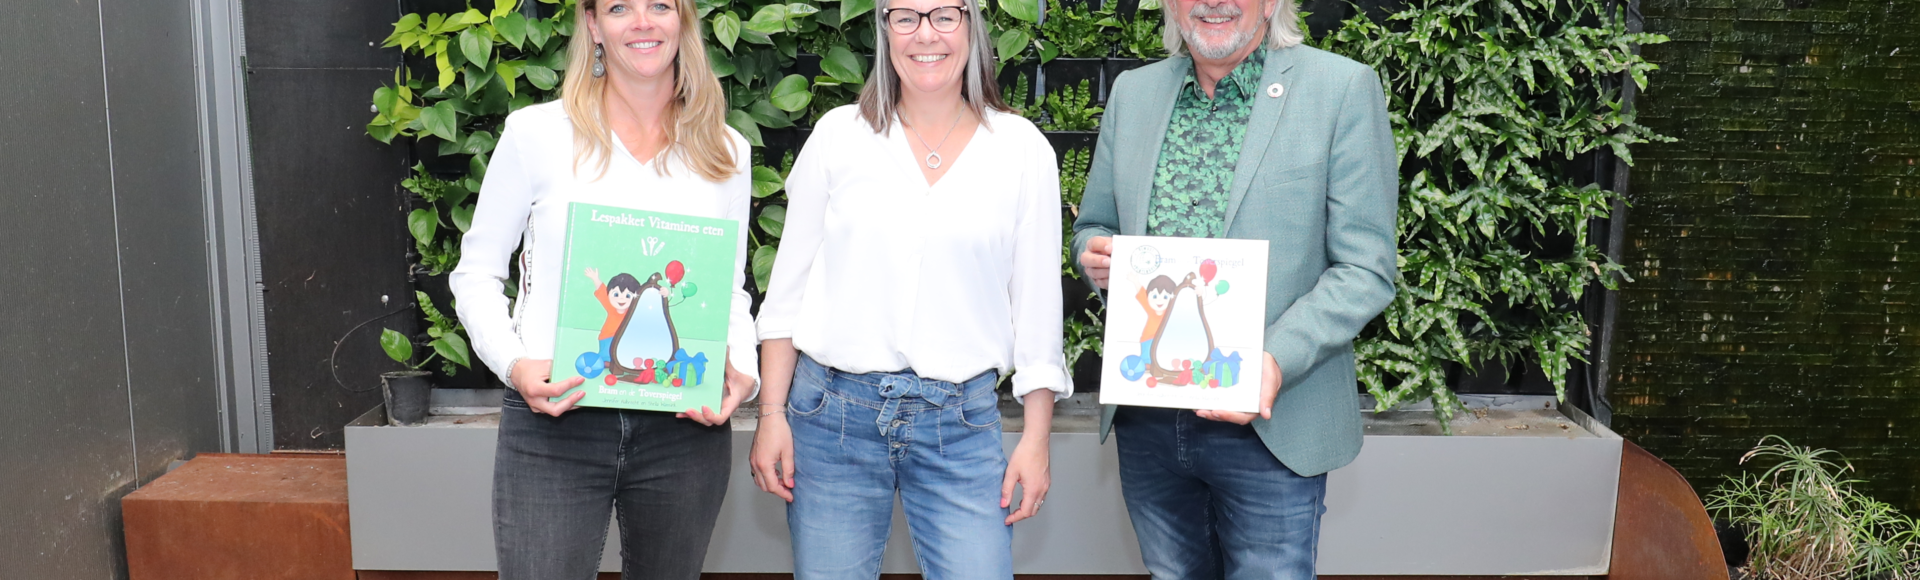 Koppert Cress sponsort prentenboek over gezonde voeding voor alle Westlandse basisscholen